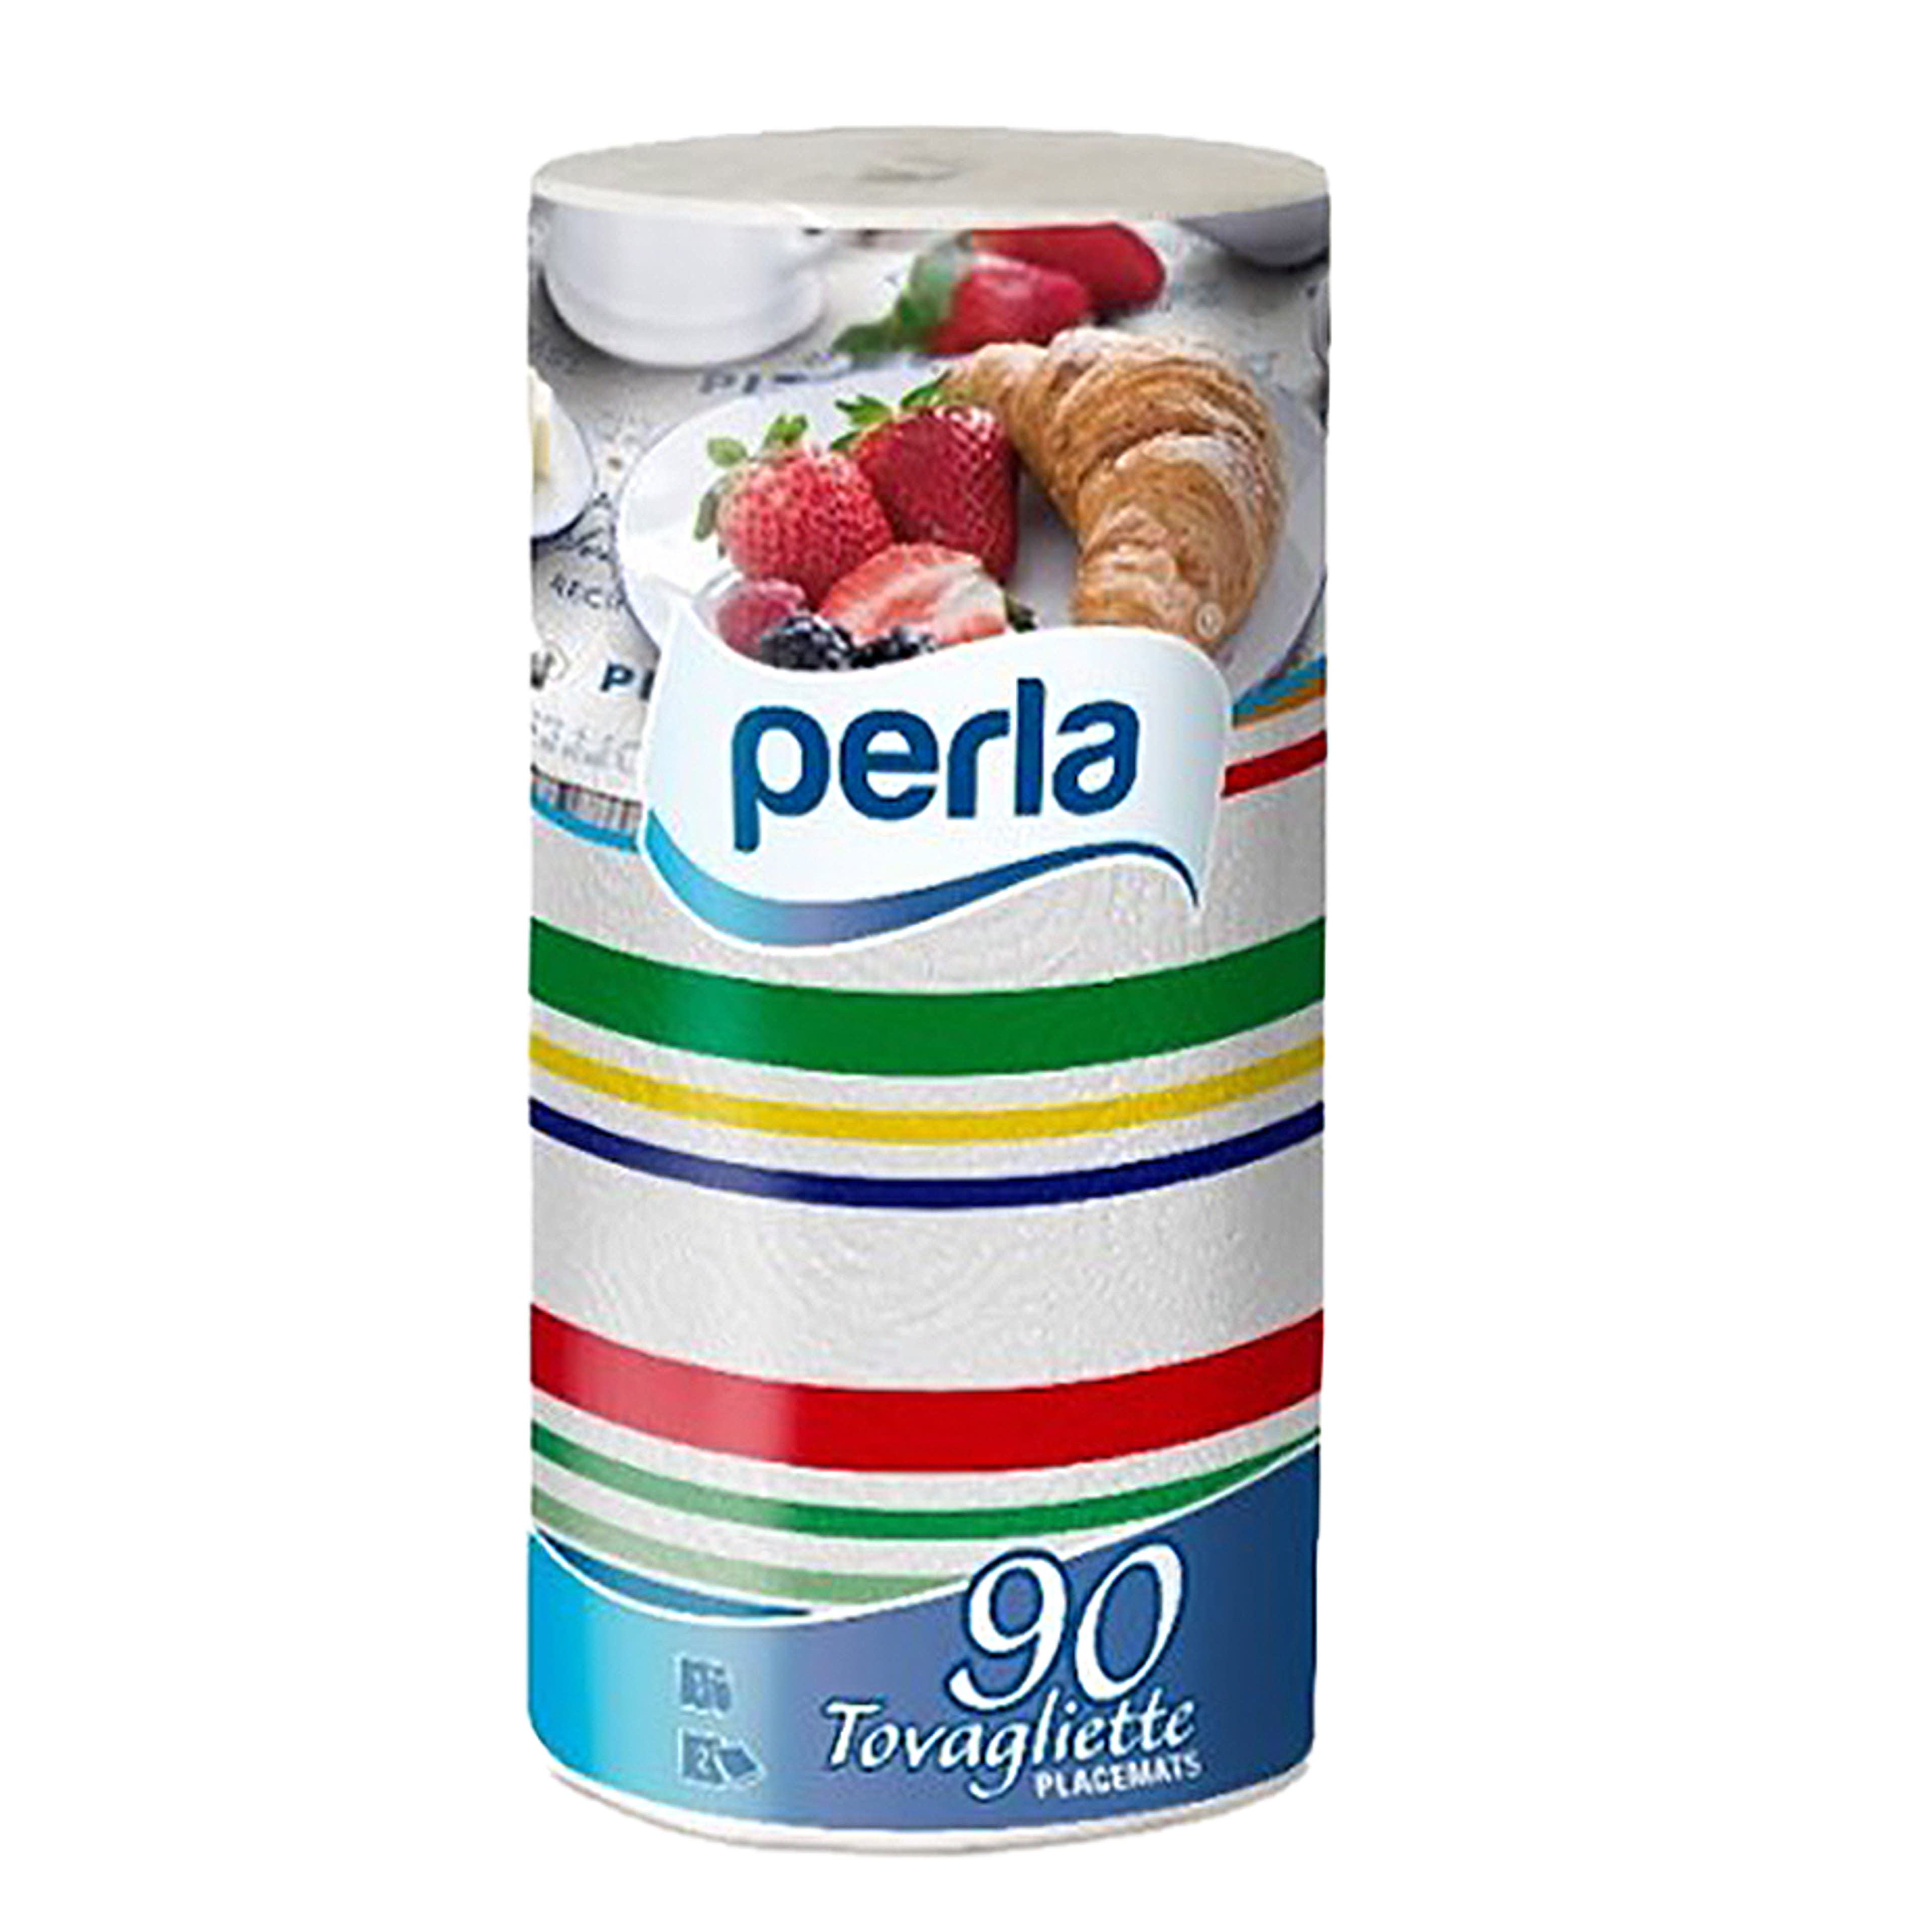 Perla Tovaglietta 2 rétegű tányéralátét - 1 db